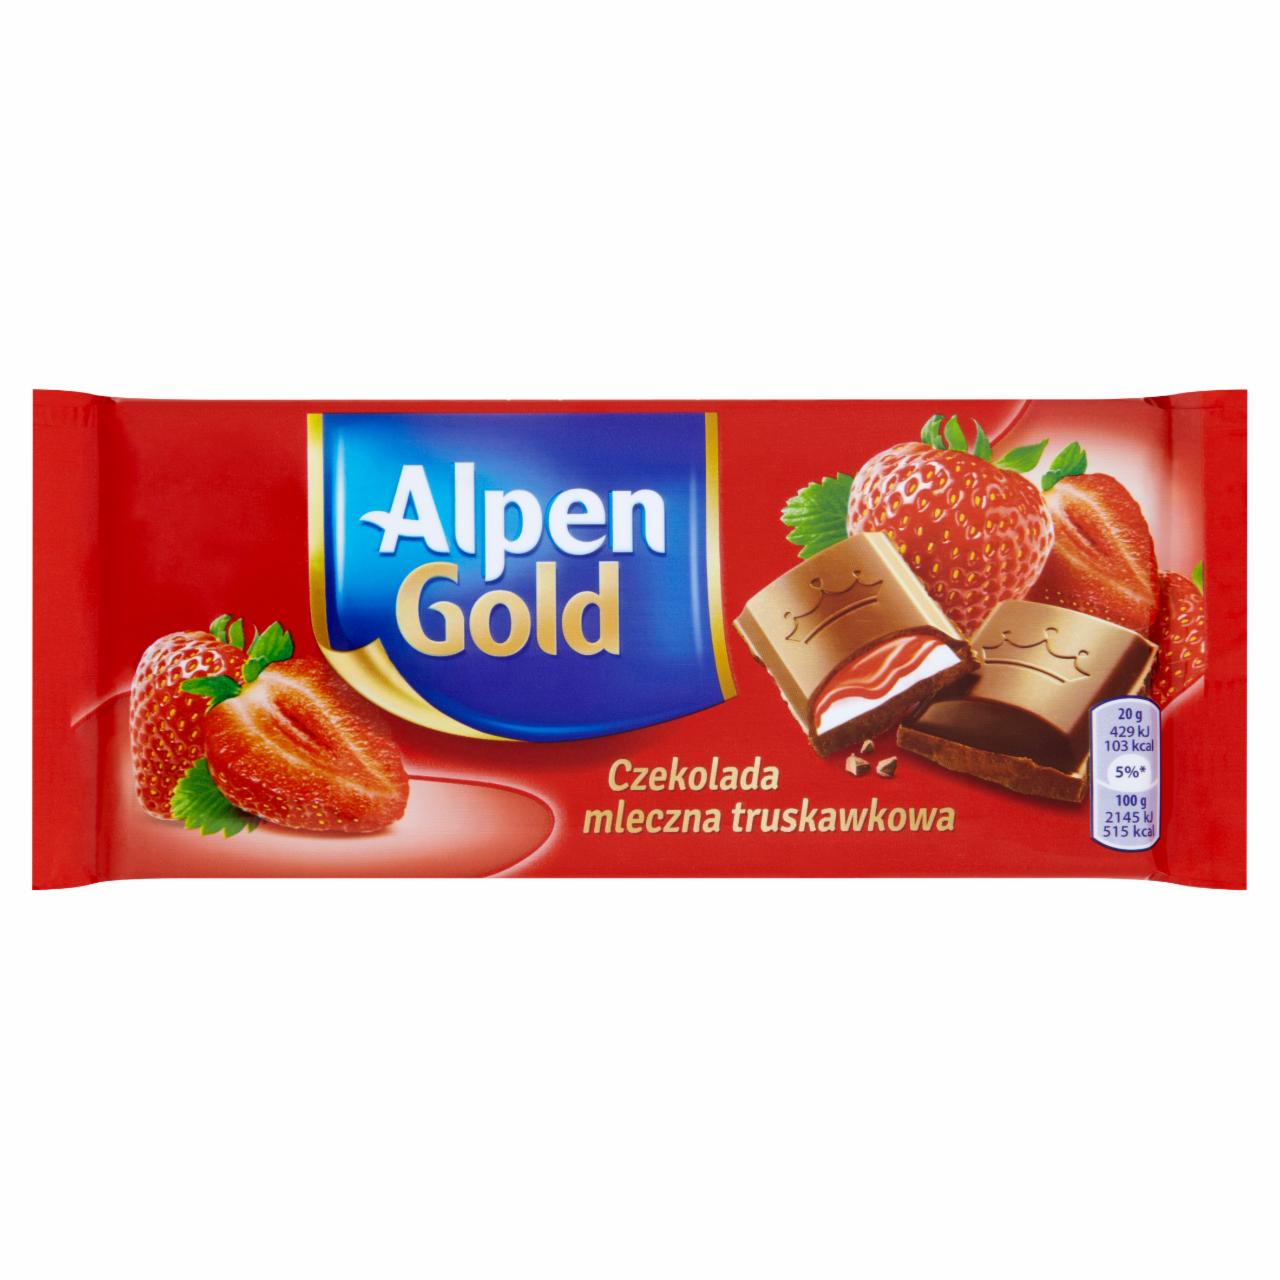 Zdjęcia - Alpen Gold Czekolada mleczna truskawkowa 100 g